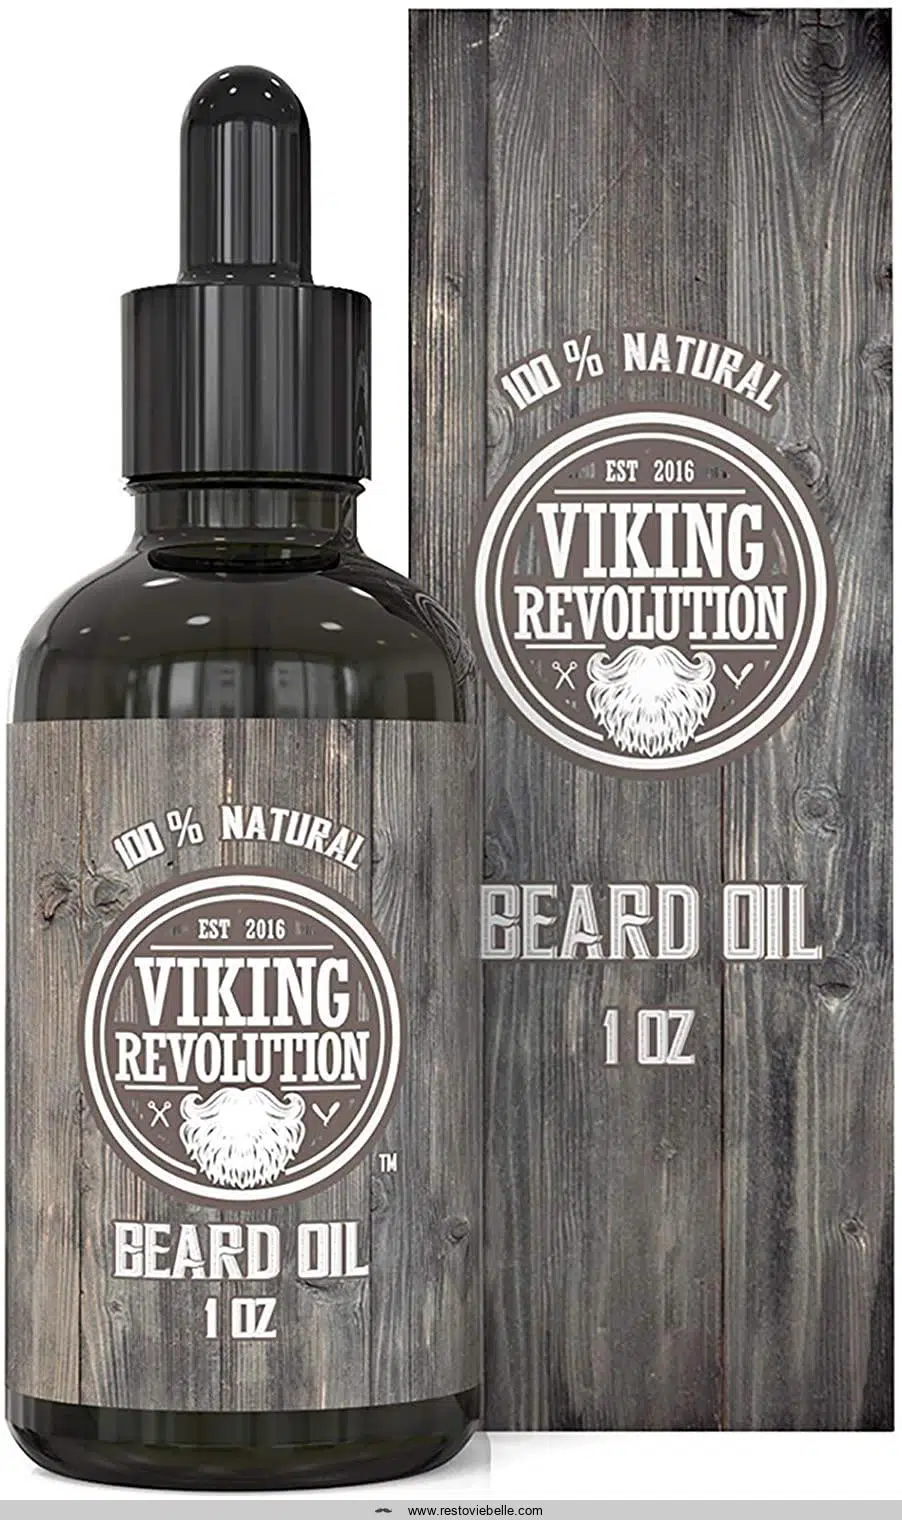 Viking Revolution Beard Oil Conditioner – Beard Moisturizer for a Sensitive Skin